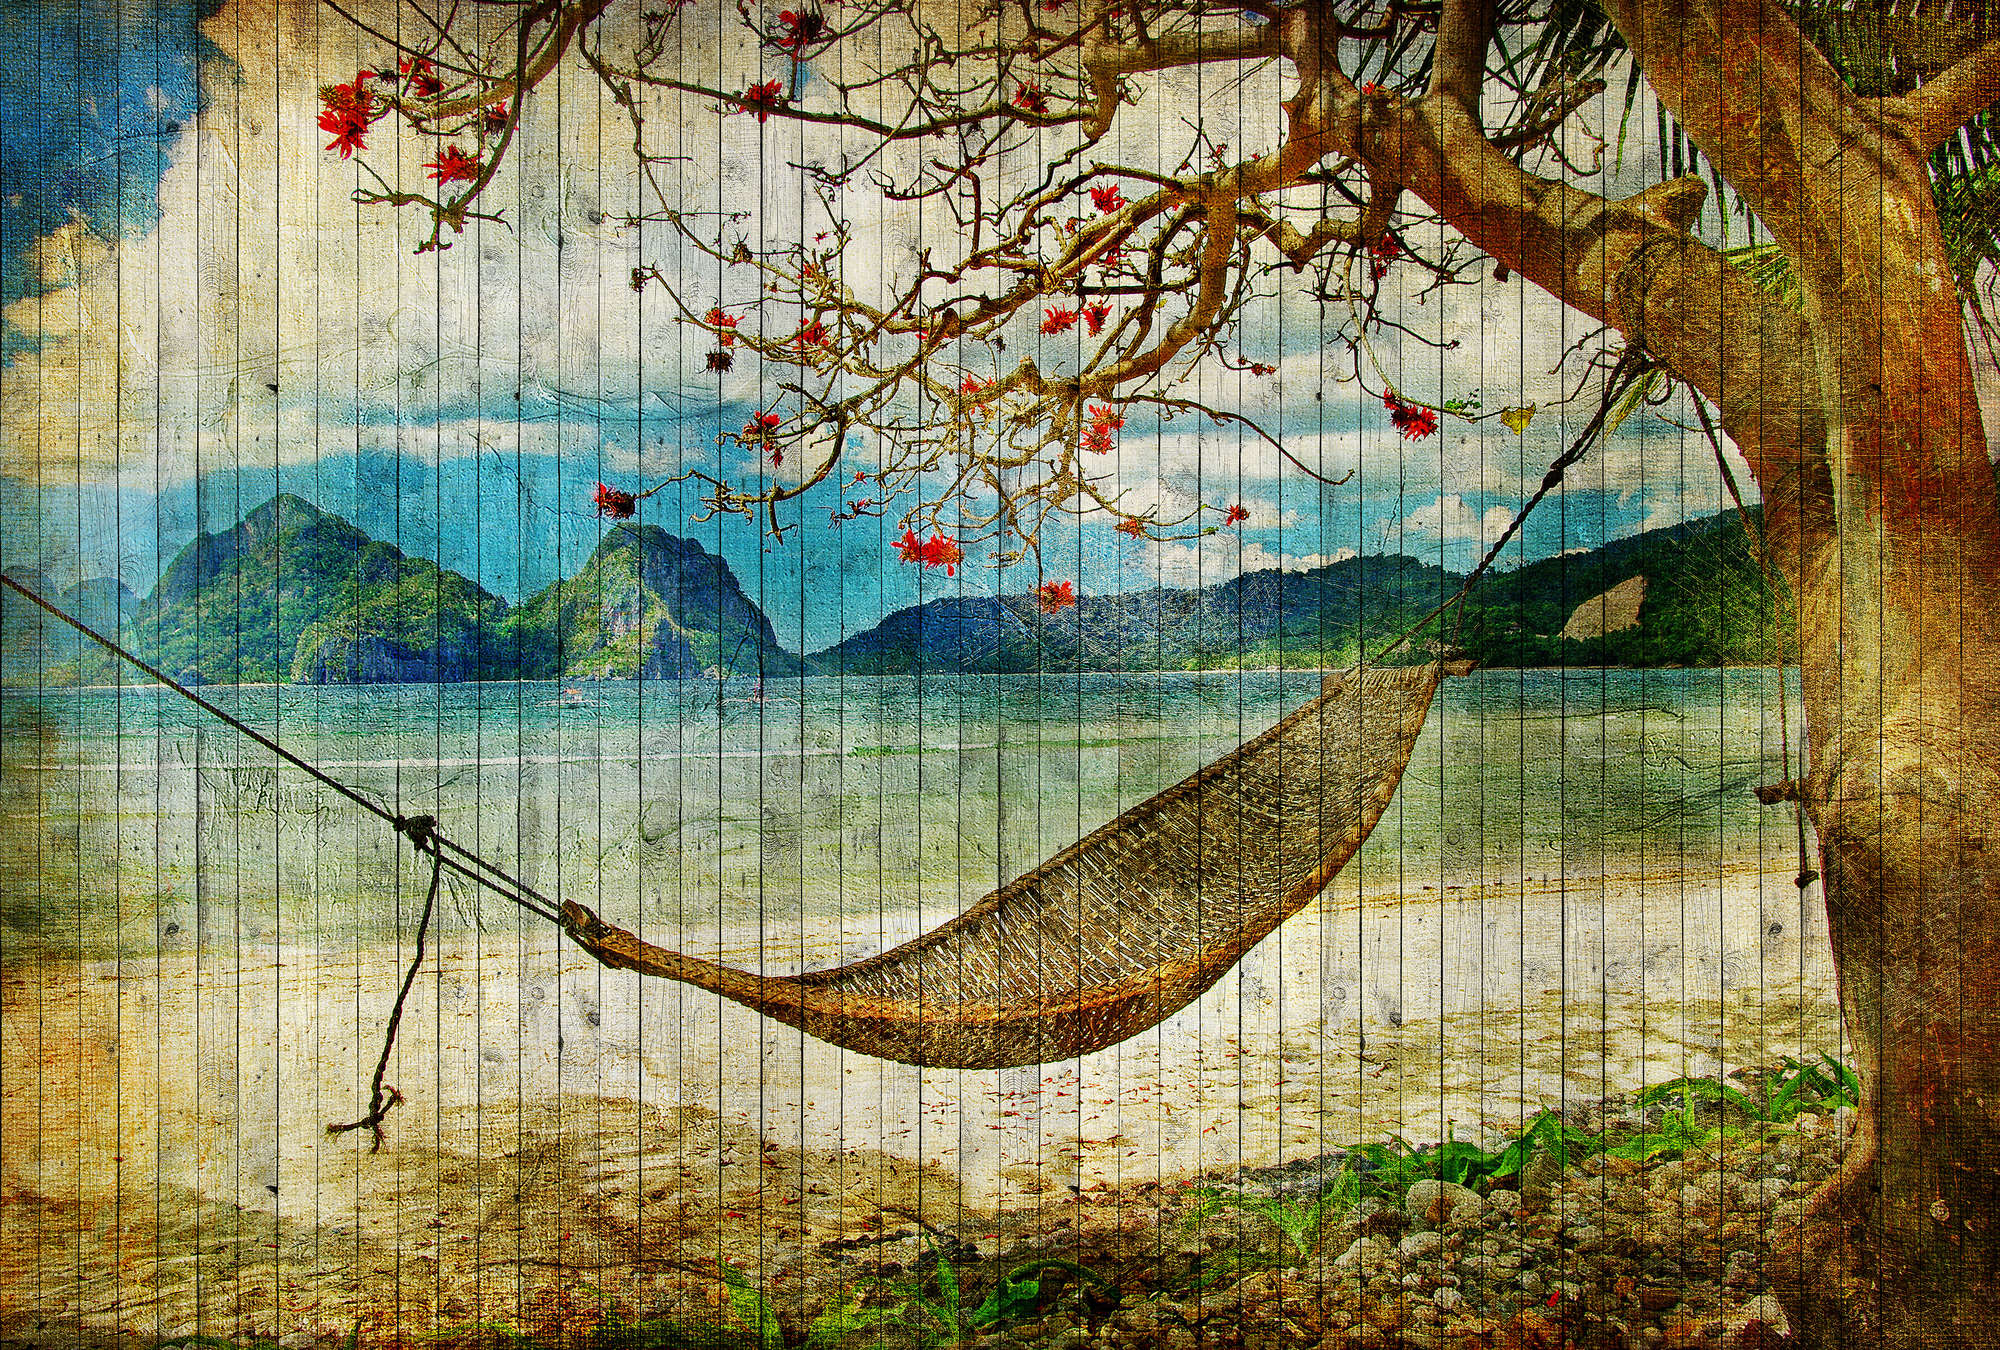             Tahiti 2 - Pannello murale in legno con amaca e spiaggia dei mari del sud - Beige, Blu | Materiali non tessuto testurizzato
        